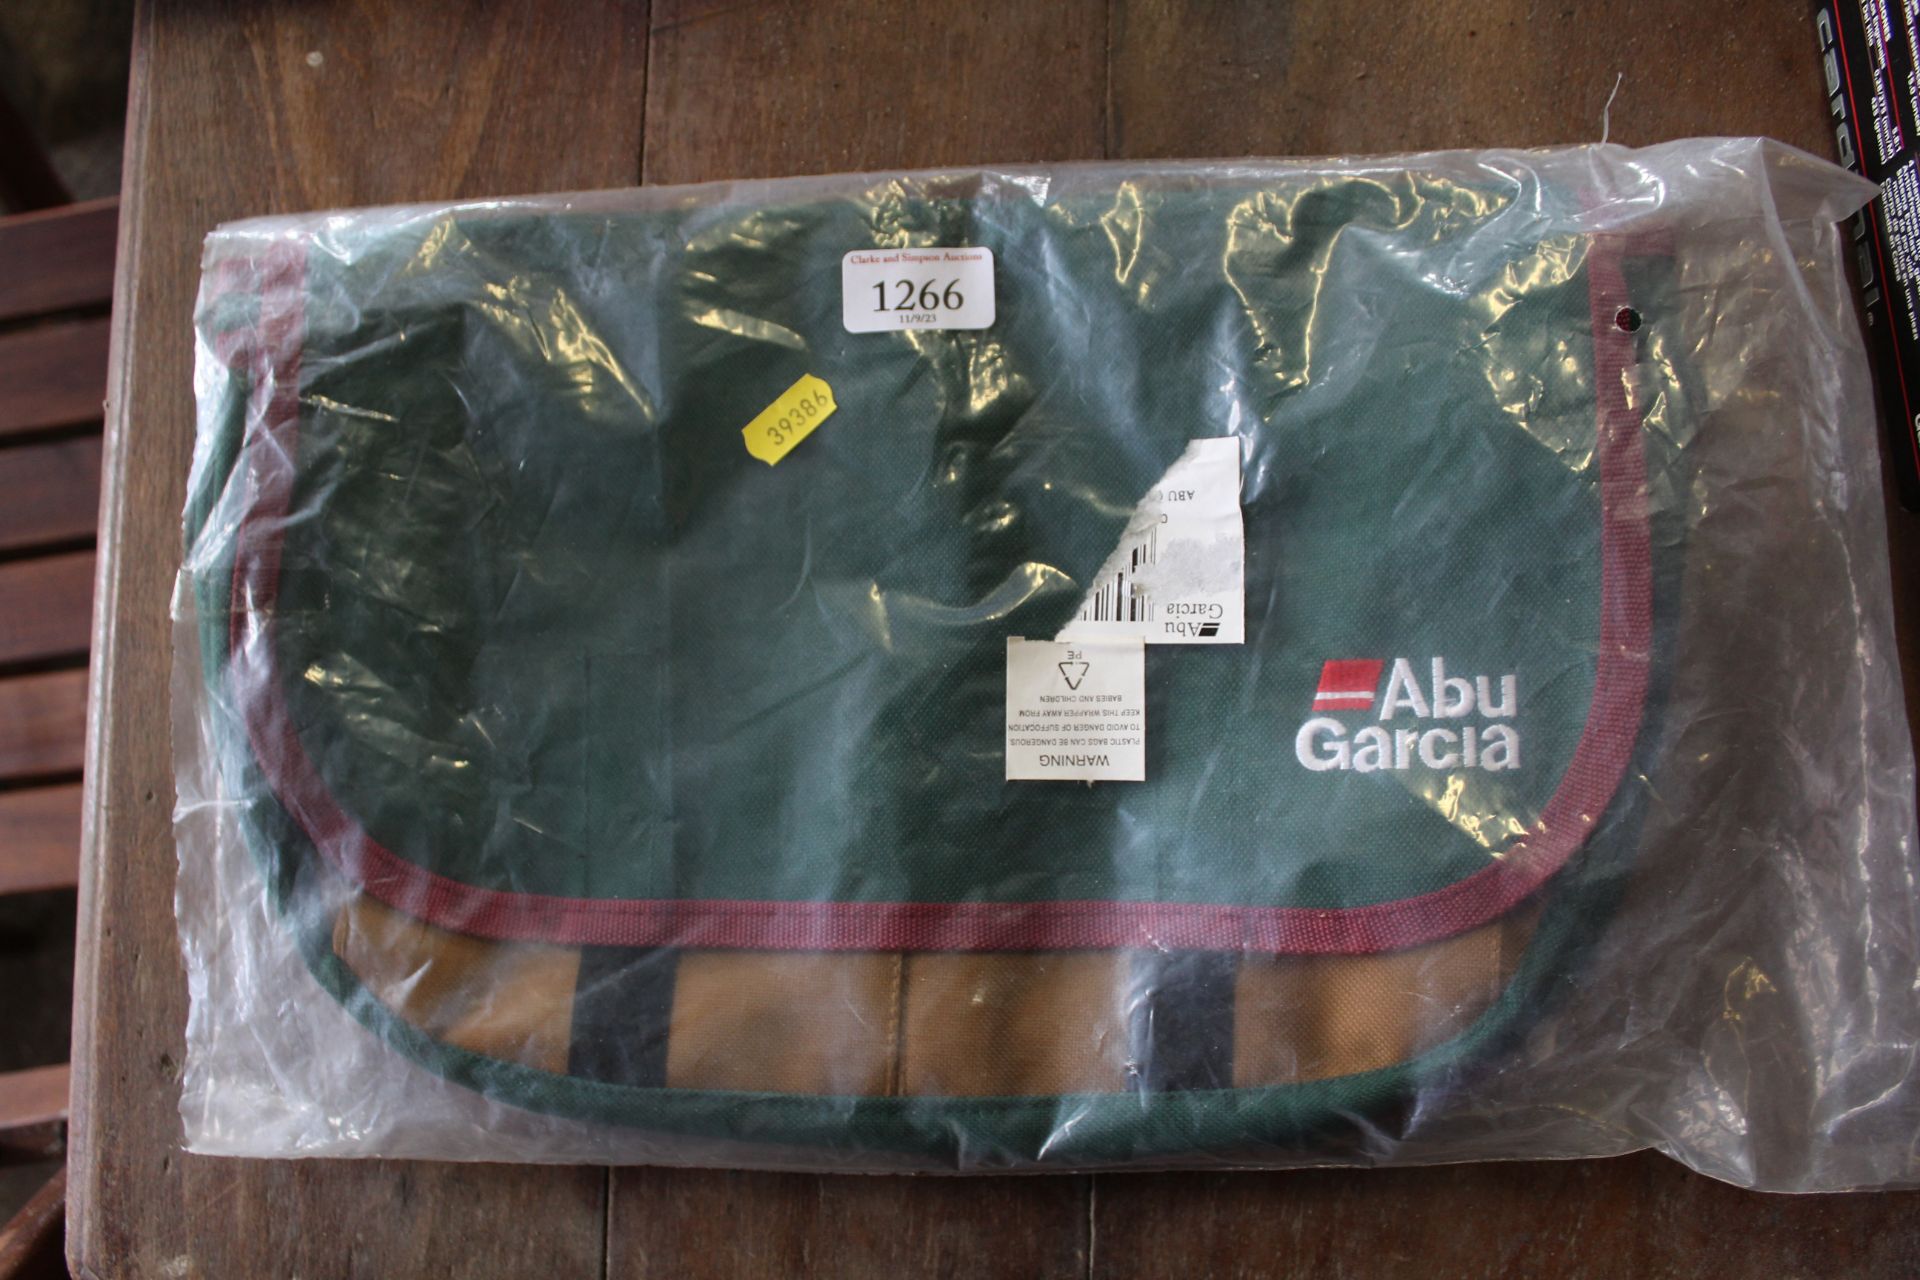 An Abu Garcia fishing bag